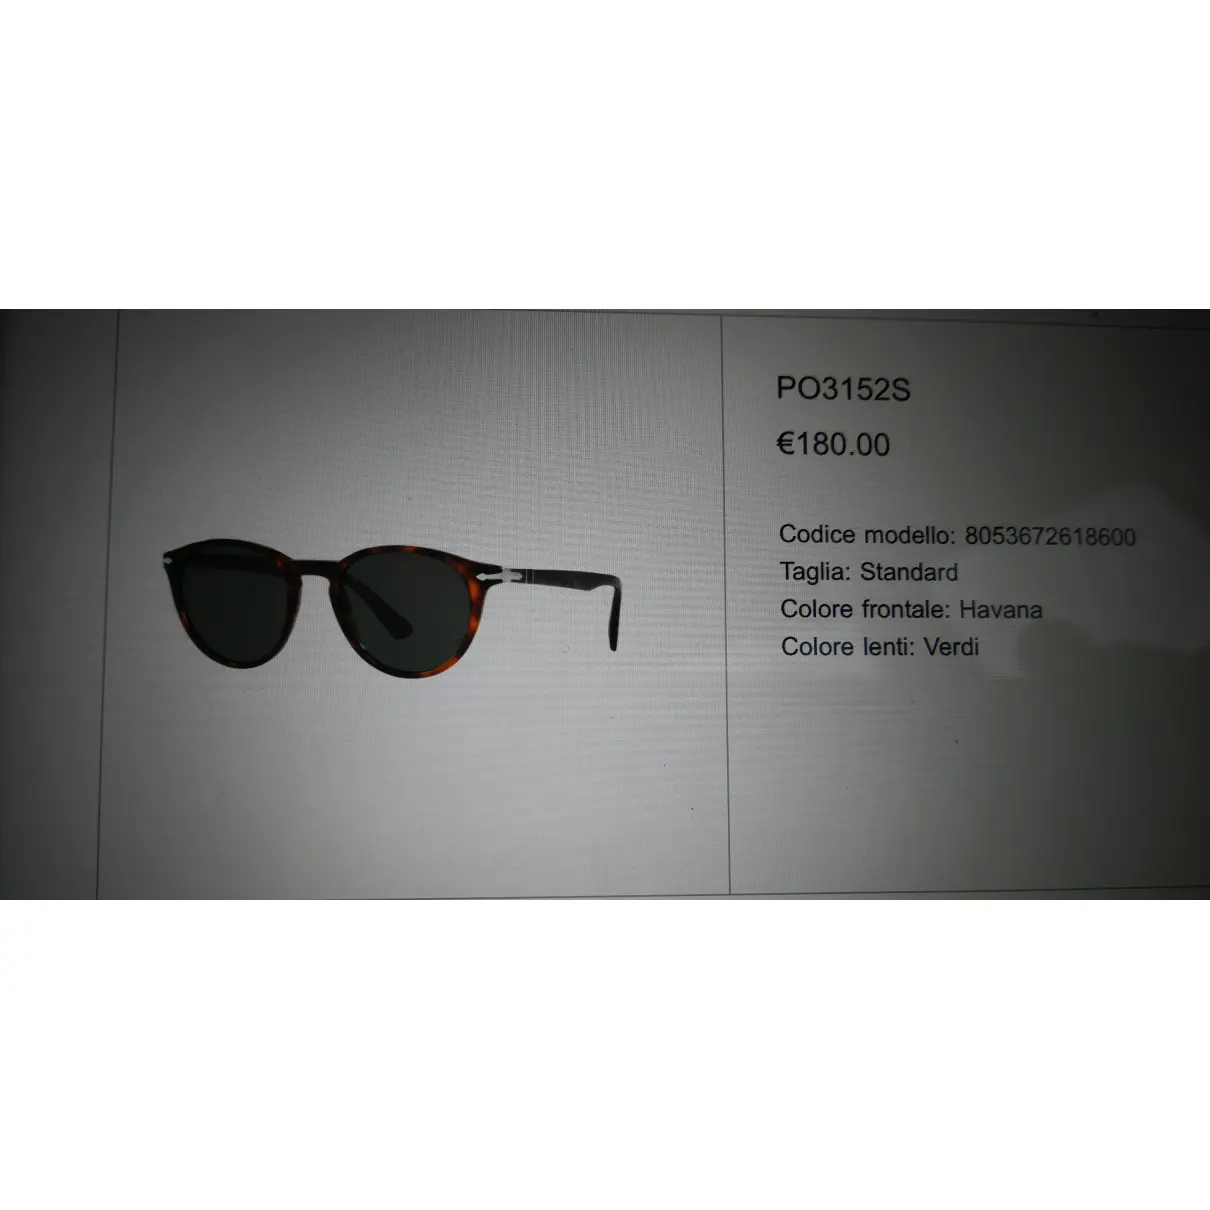 Luxury Persol Sunglasses Men